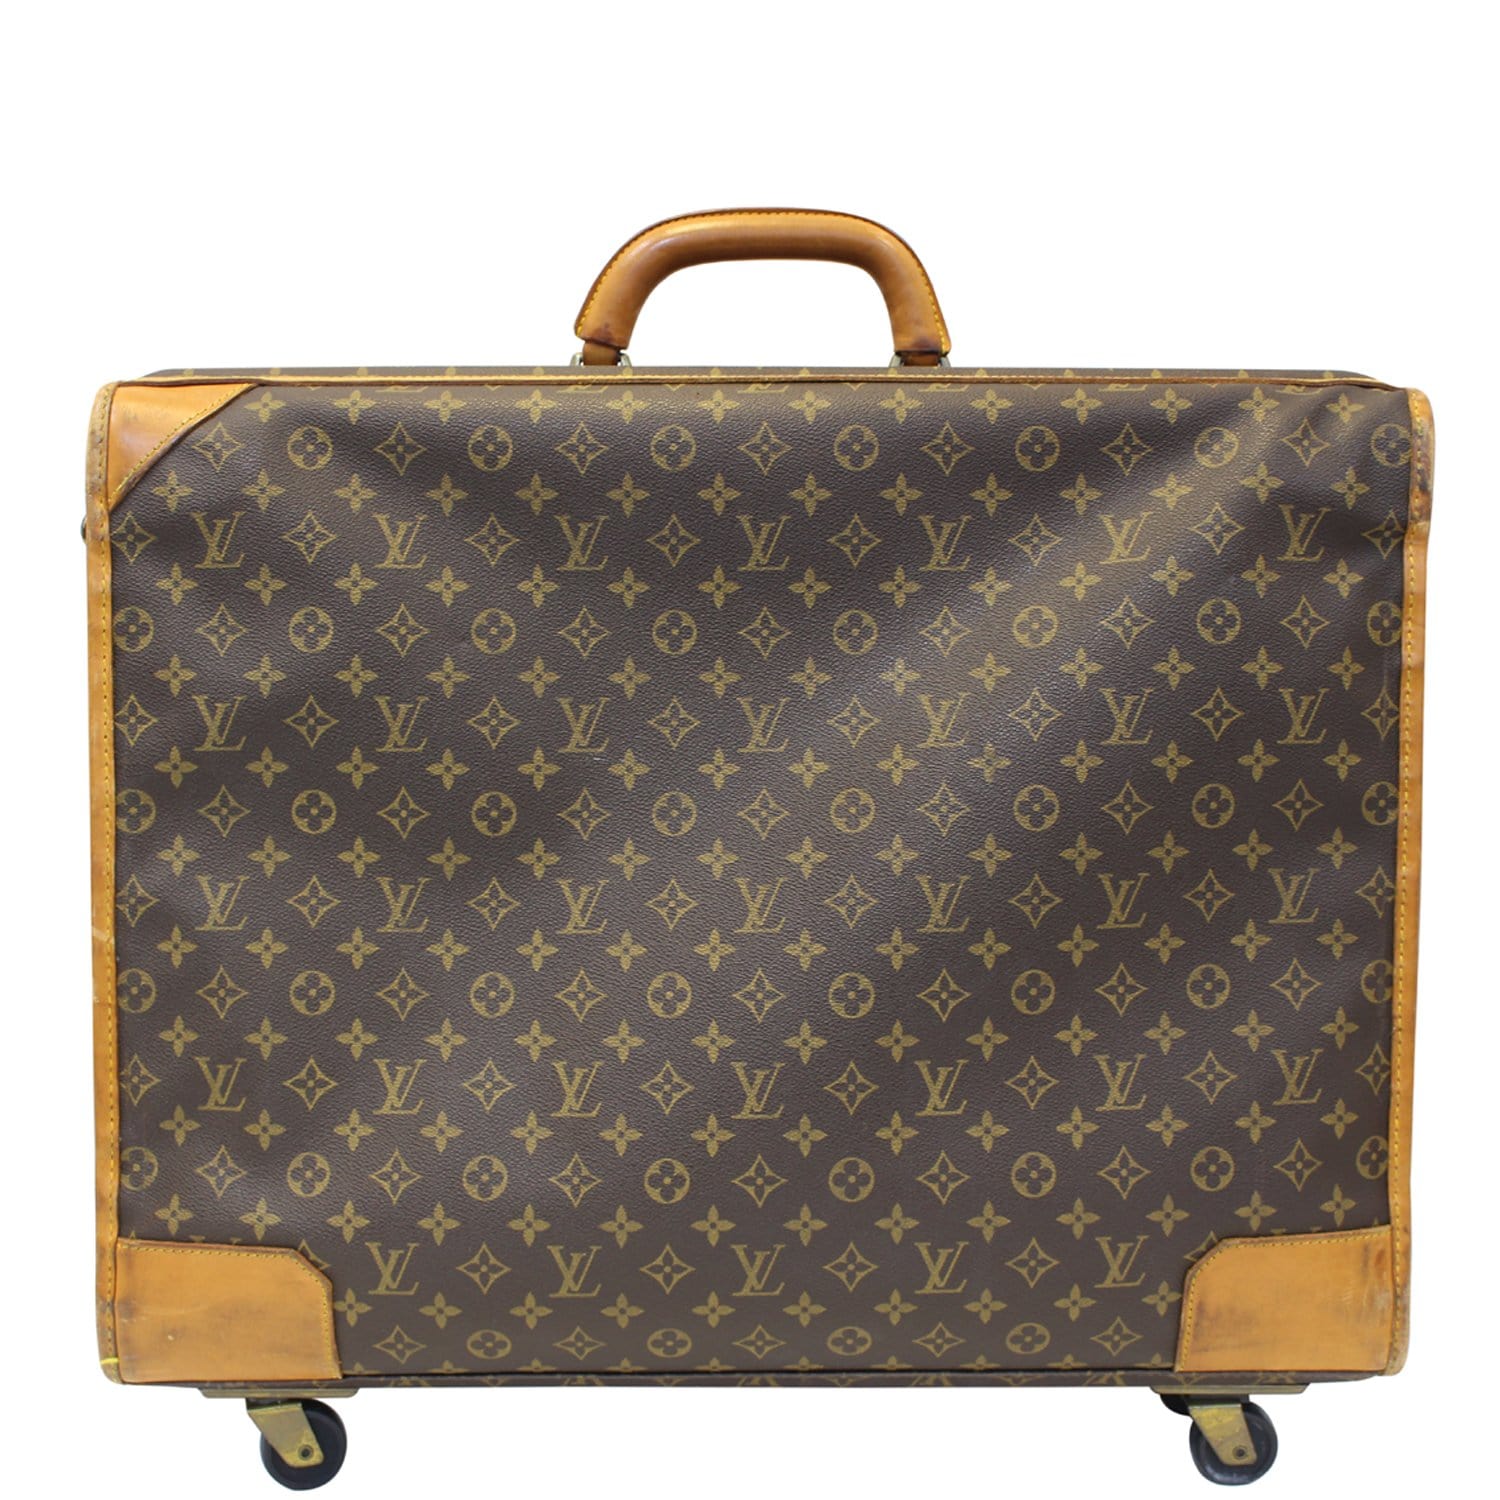 OBJ file Louis Vuitton bag, suitcase, case・3D print design to